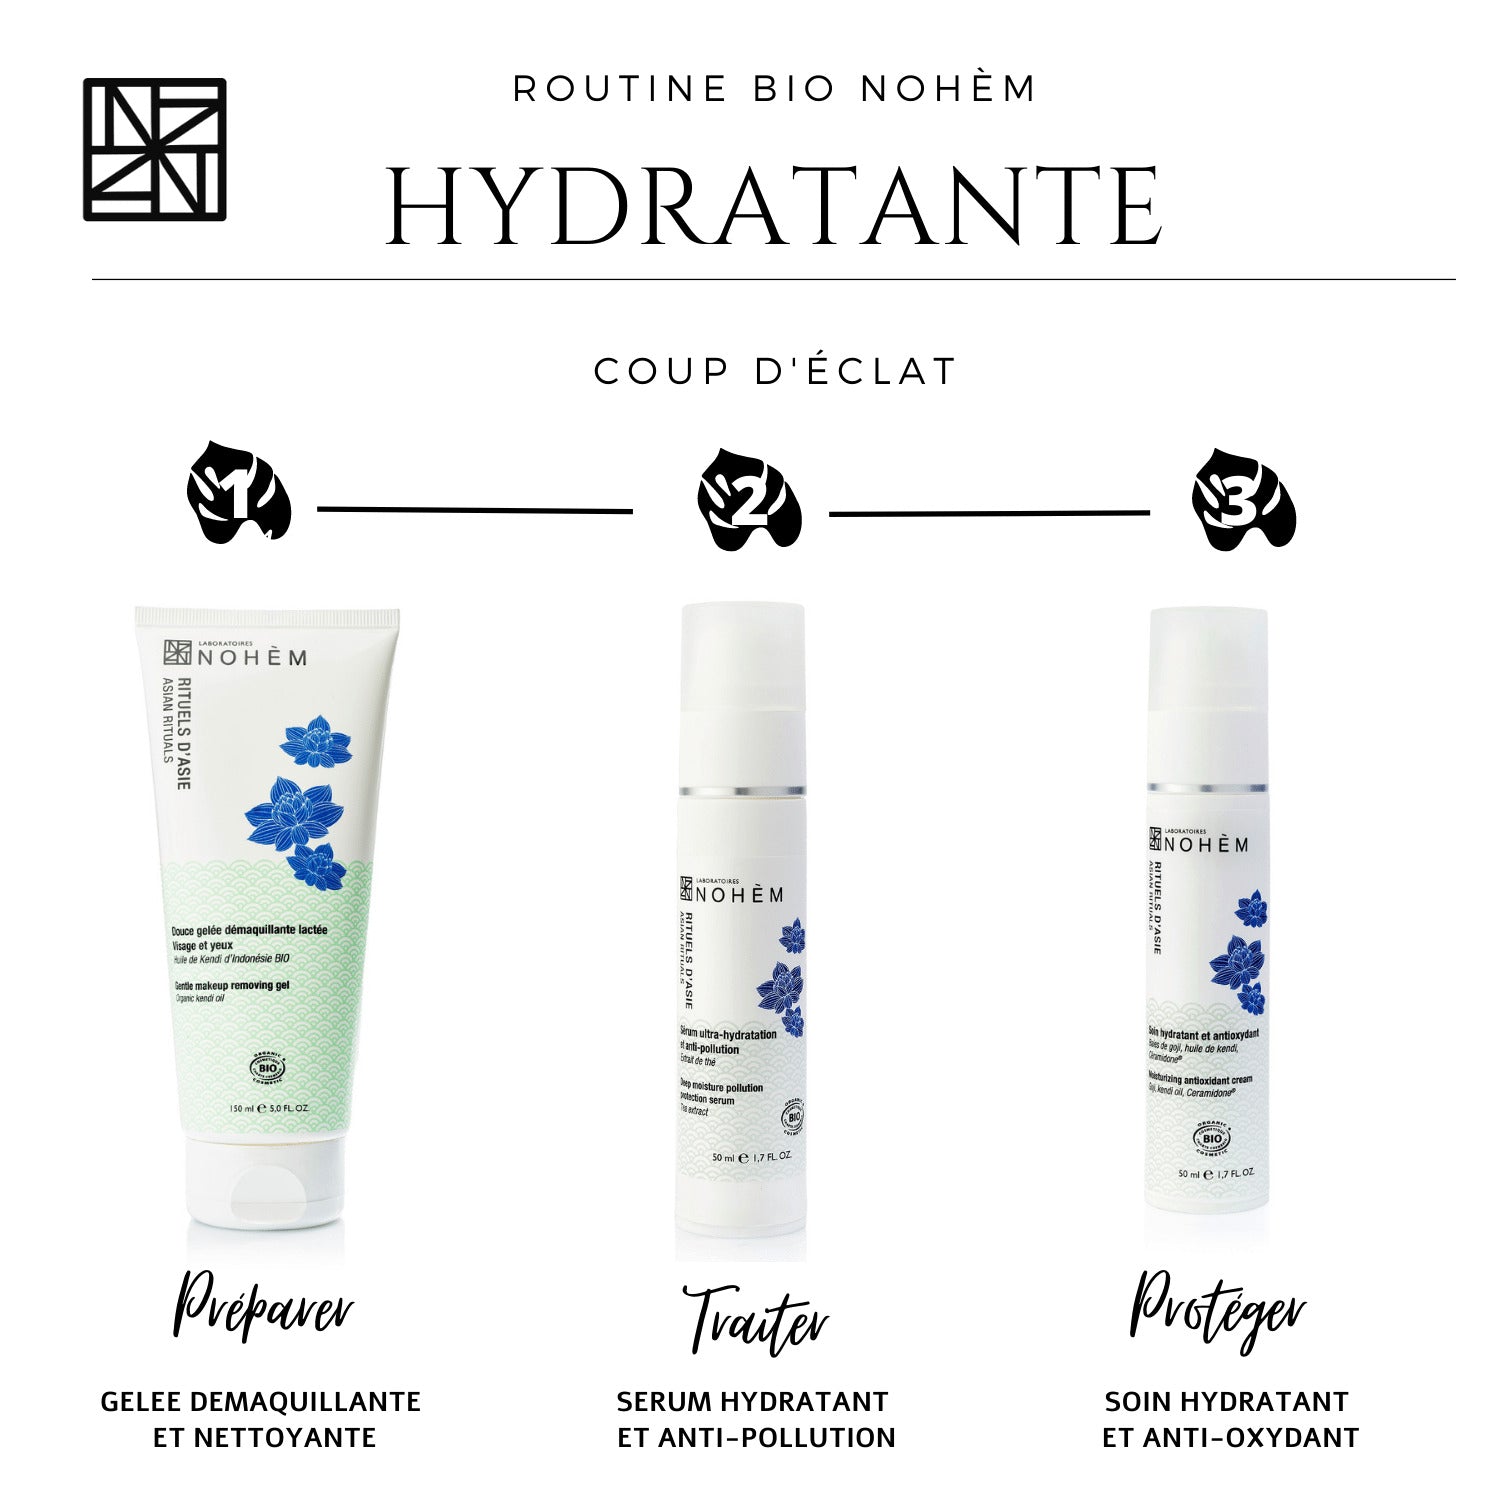 Soin hydratant et antioxydant naturel : régénérez et protégez votre peau